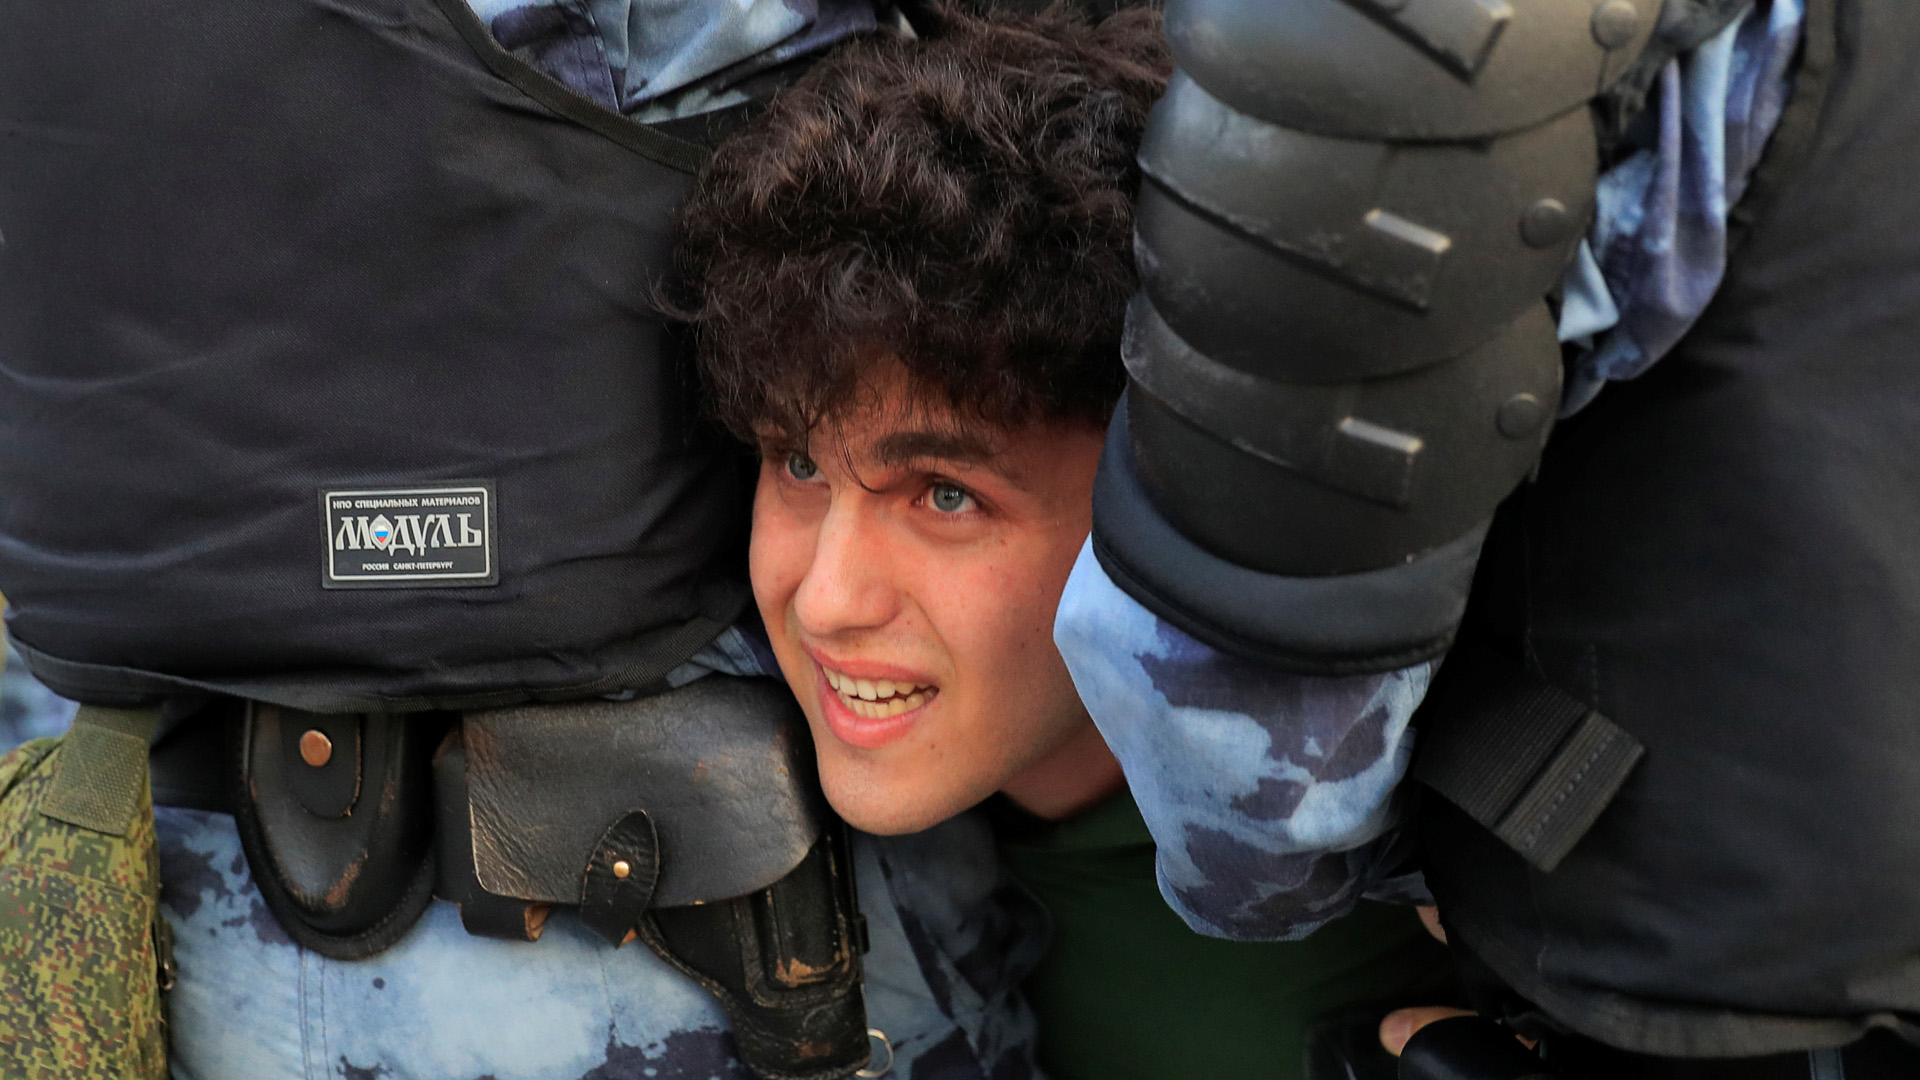 Ein Demonstrant wird von Polizisten gewaltsam festgehalten